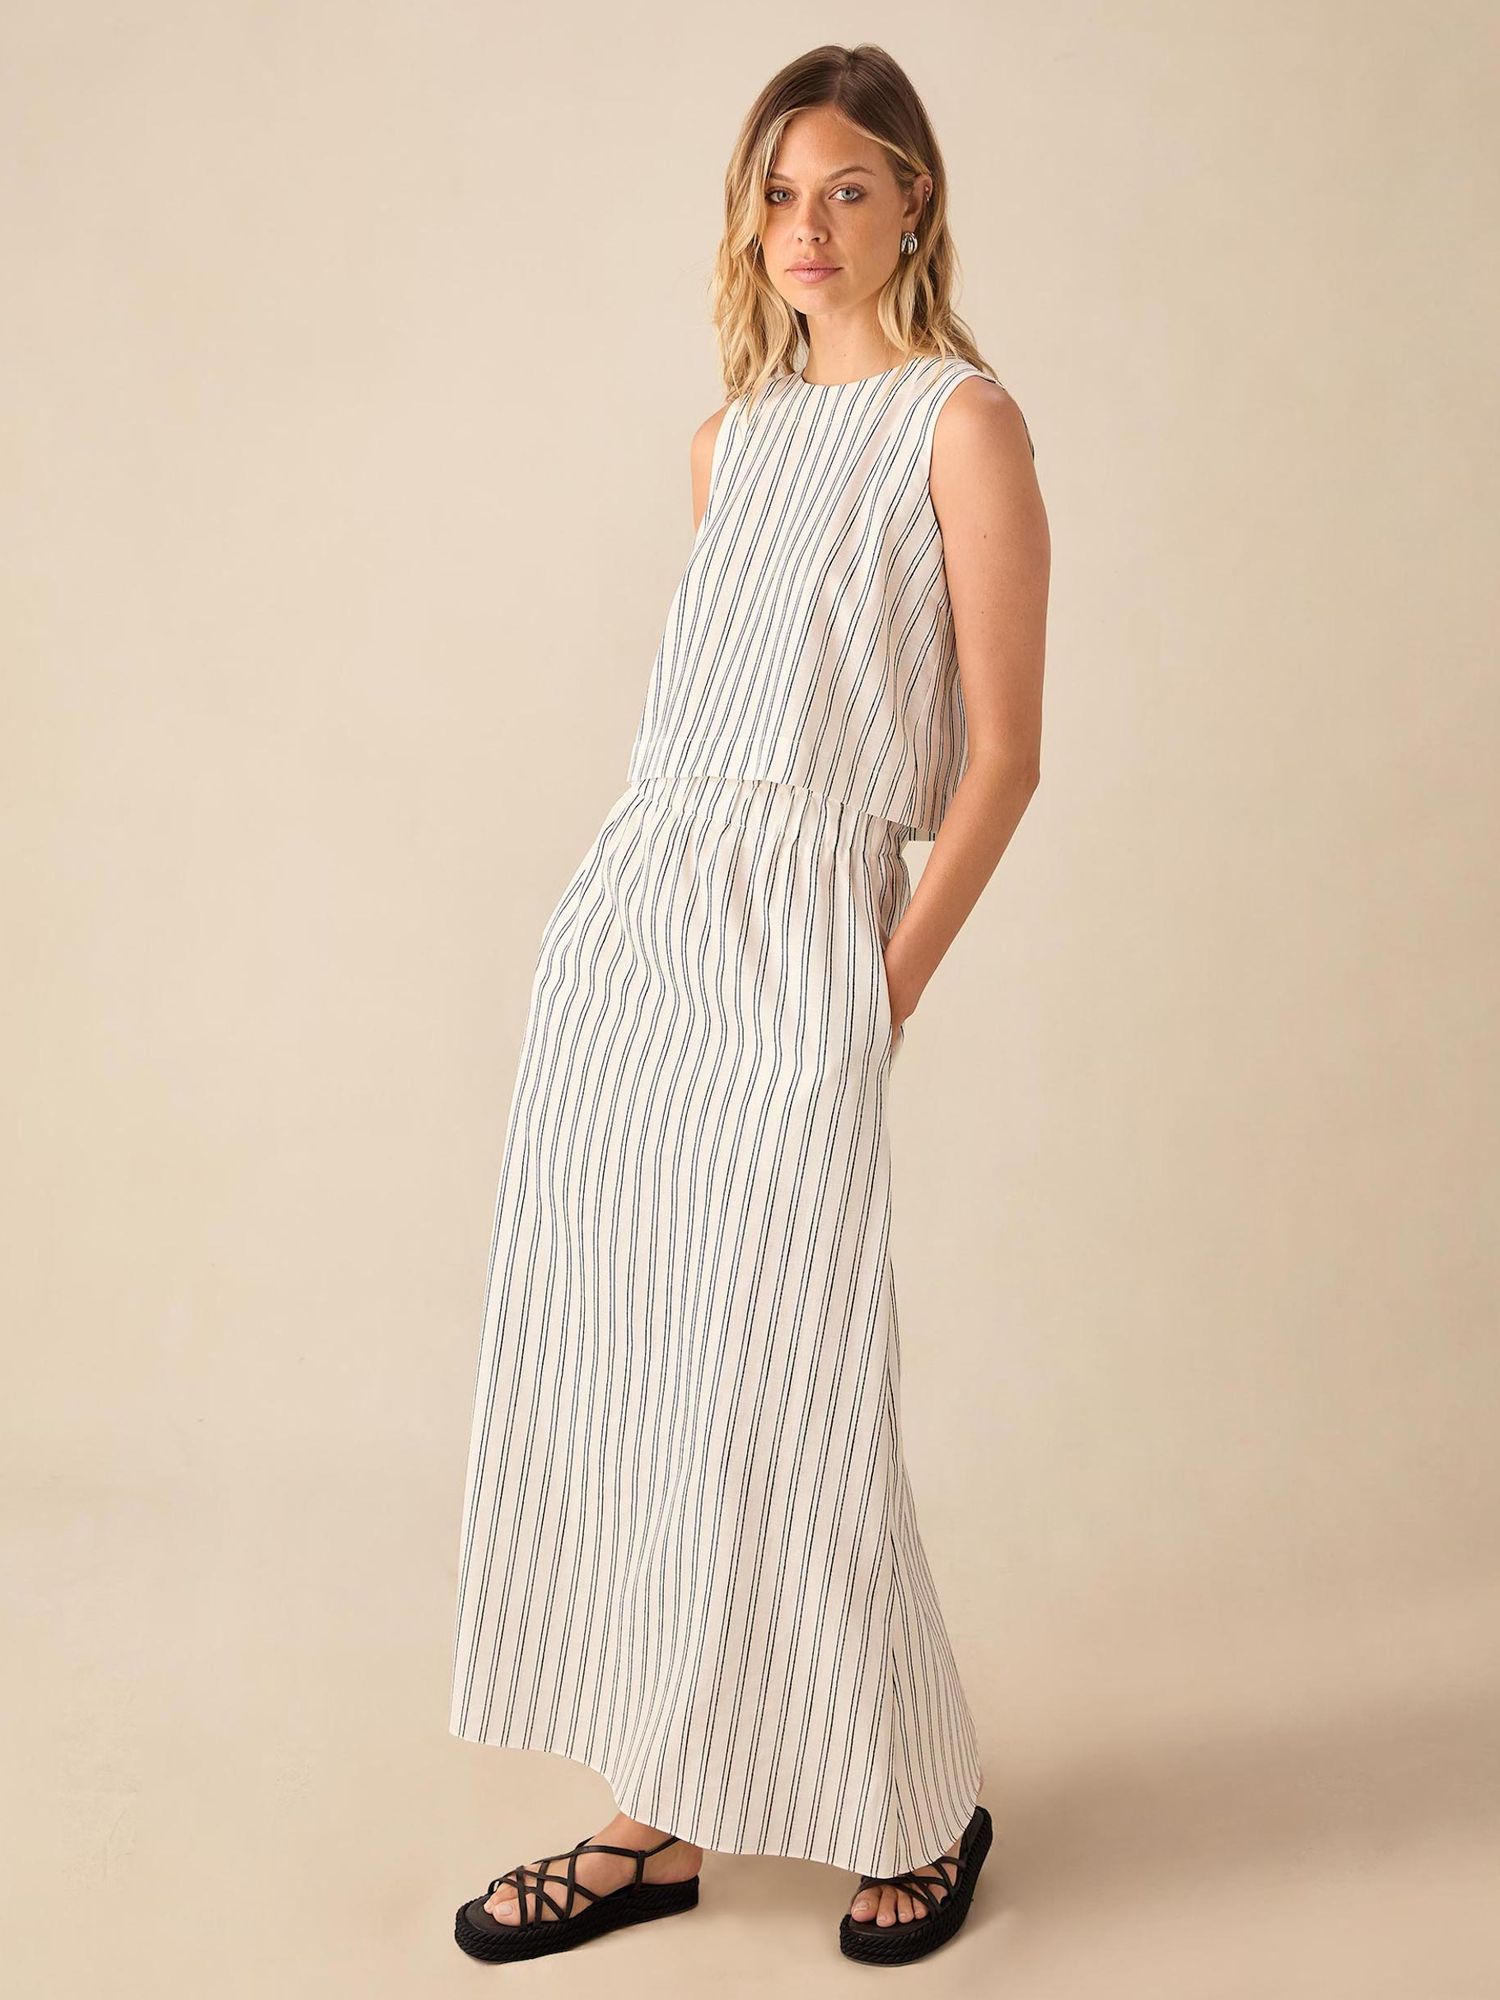 Ro&Zo Double Stripe Linen Blend Maxi Skirt, Ivory/Black, 6